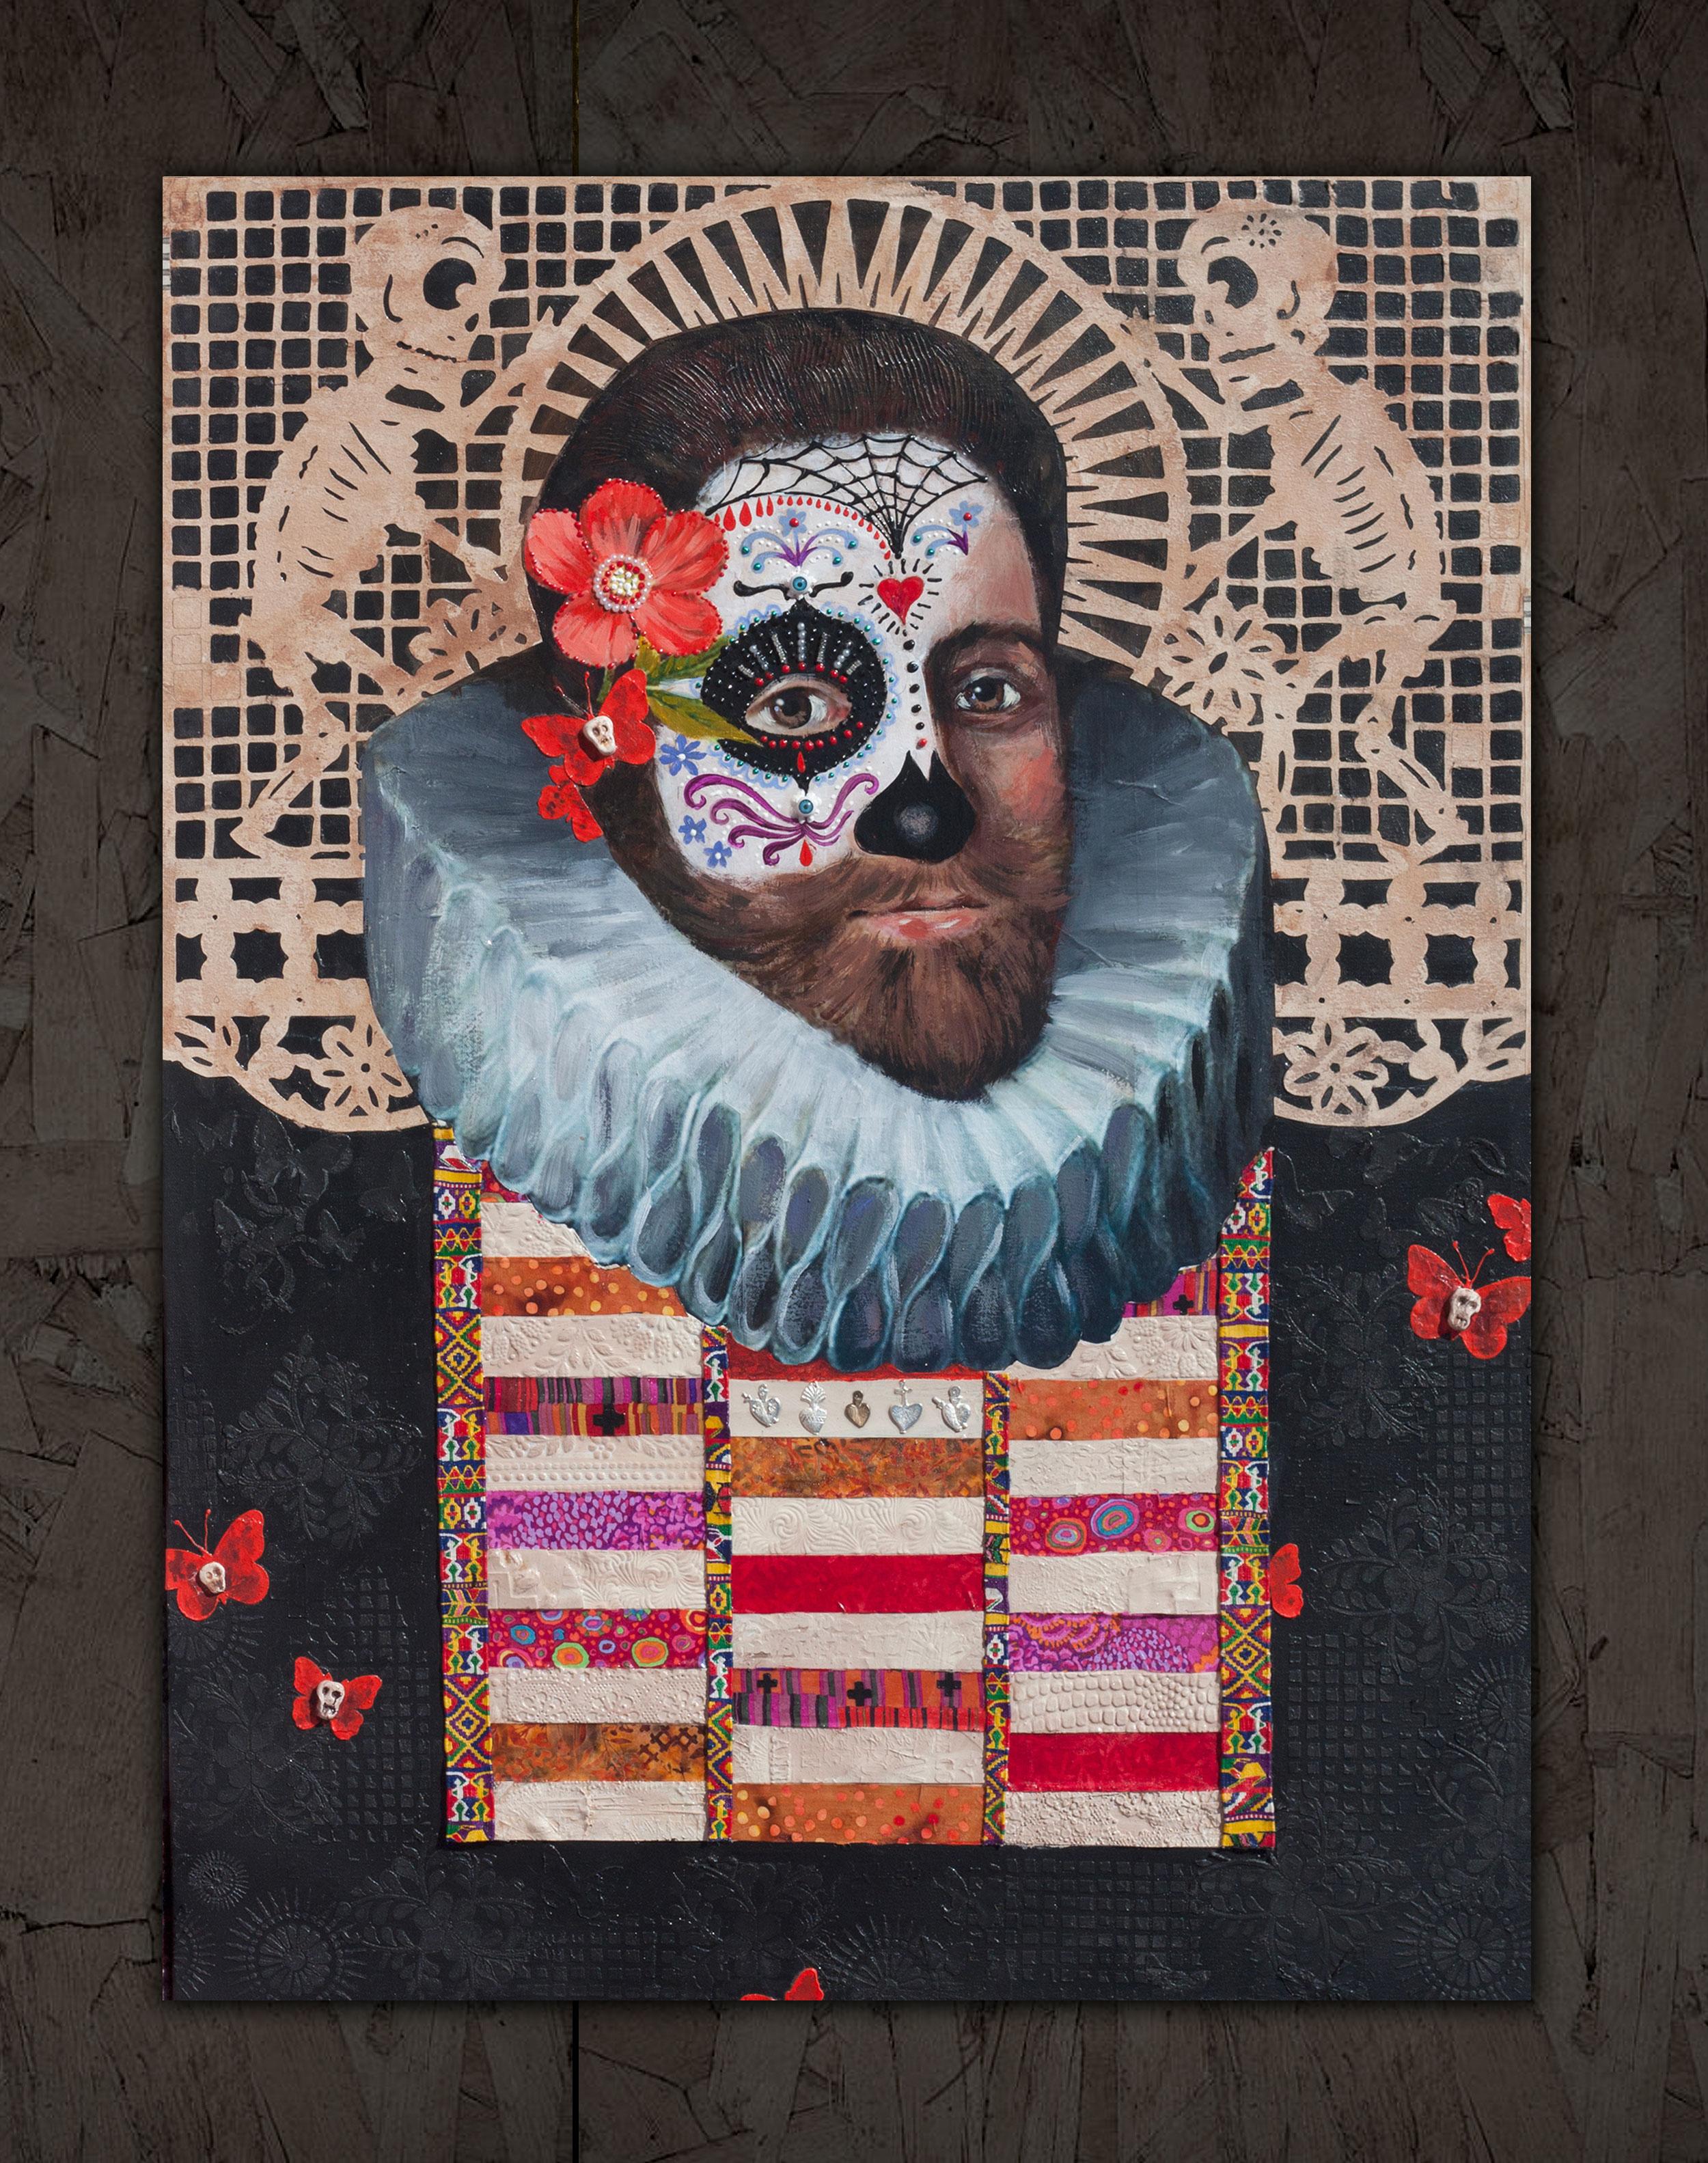 <p>Kommentare der Künstlerin<br>Die Künstlerin Darlene McElroy hat ein kompliziertes und unterhaltsames Mixed-Media-Porträt mit Anspielungen auf mexikanische Motive zum Tag der Toten und auf die Kunst der Renaissance geschaffen: 